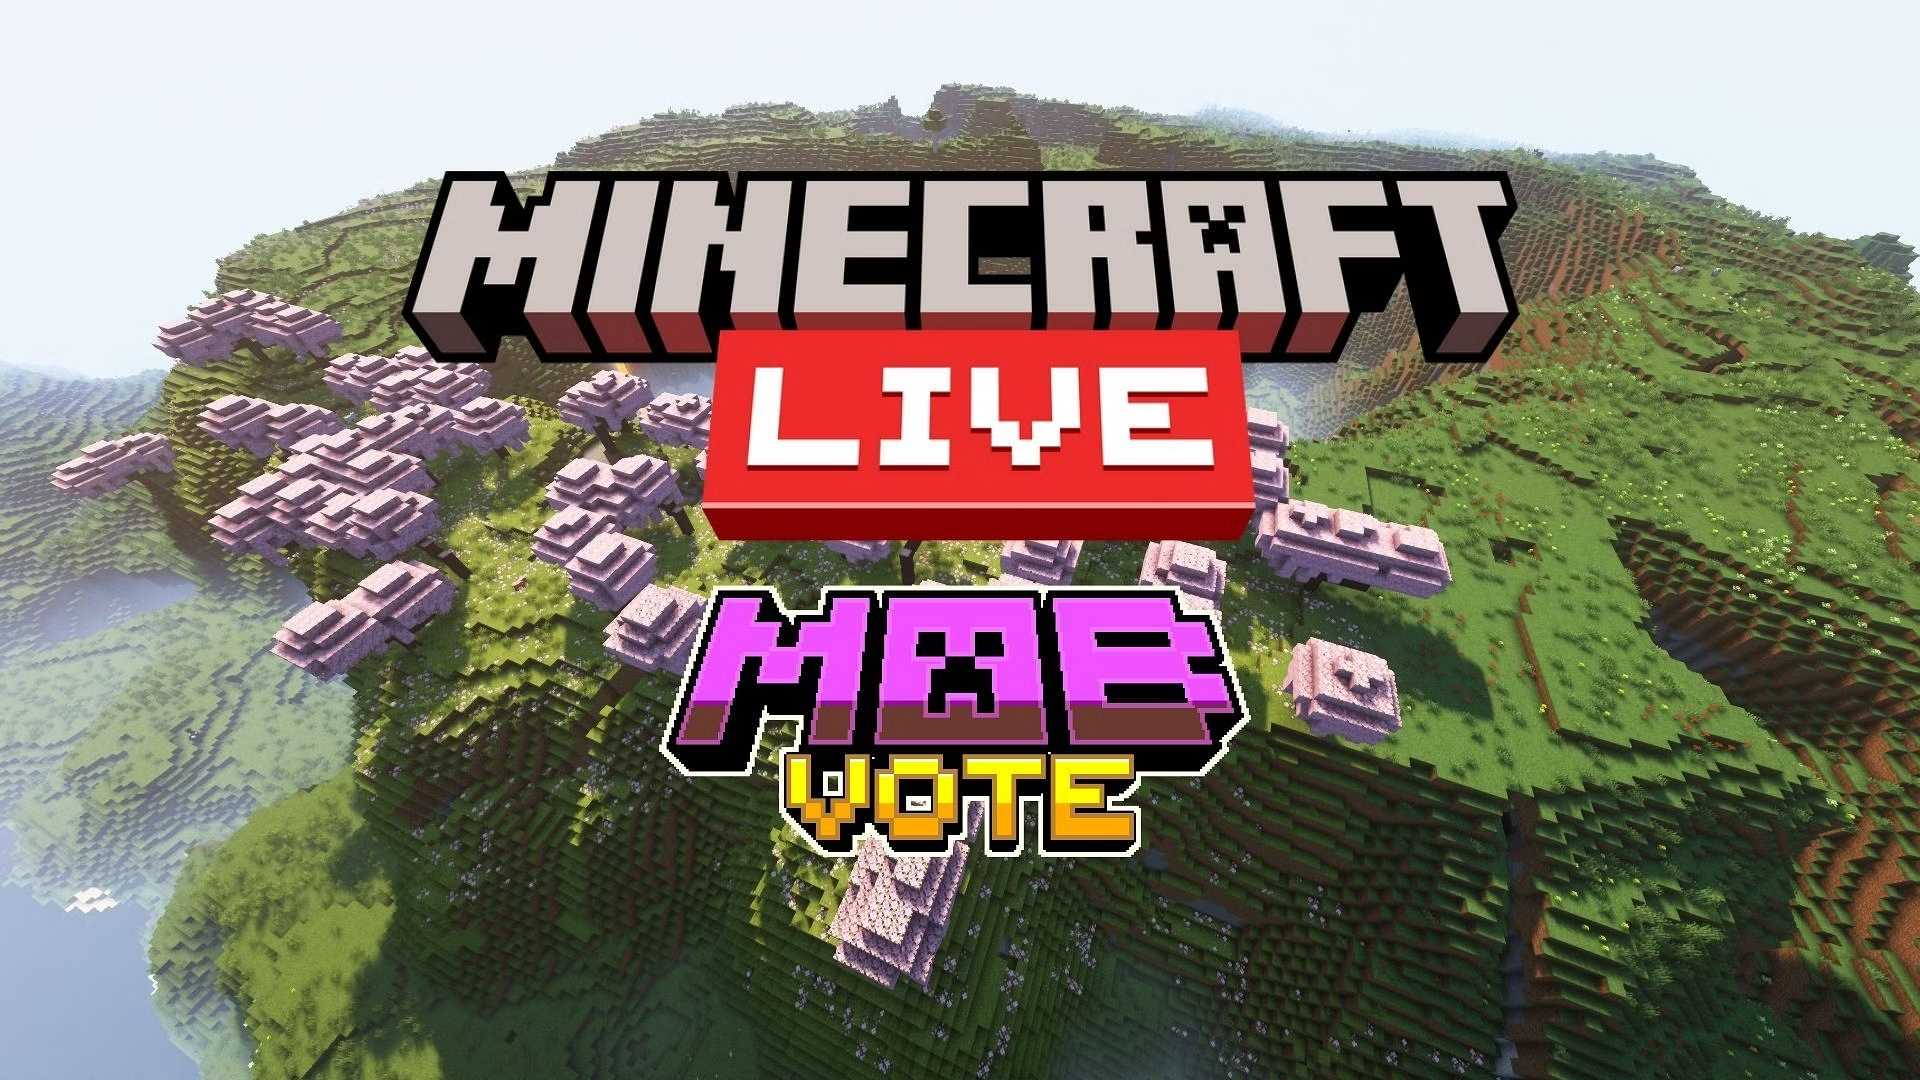 Minecraft Mob Vote 2023: Revelando a semana de anúncios de